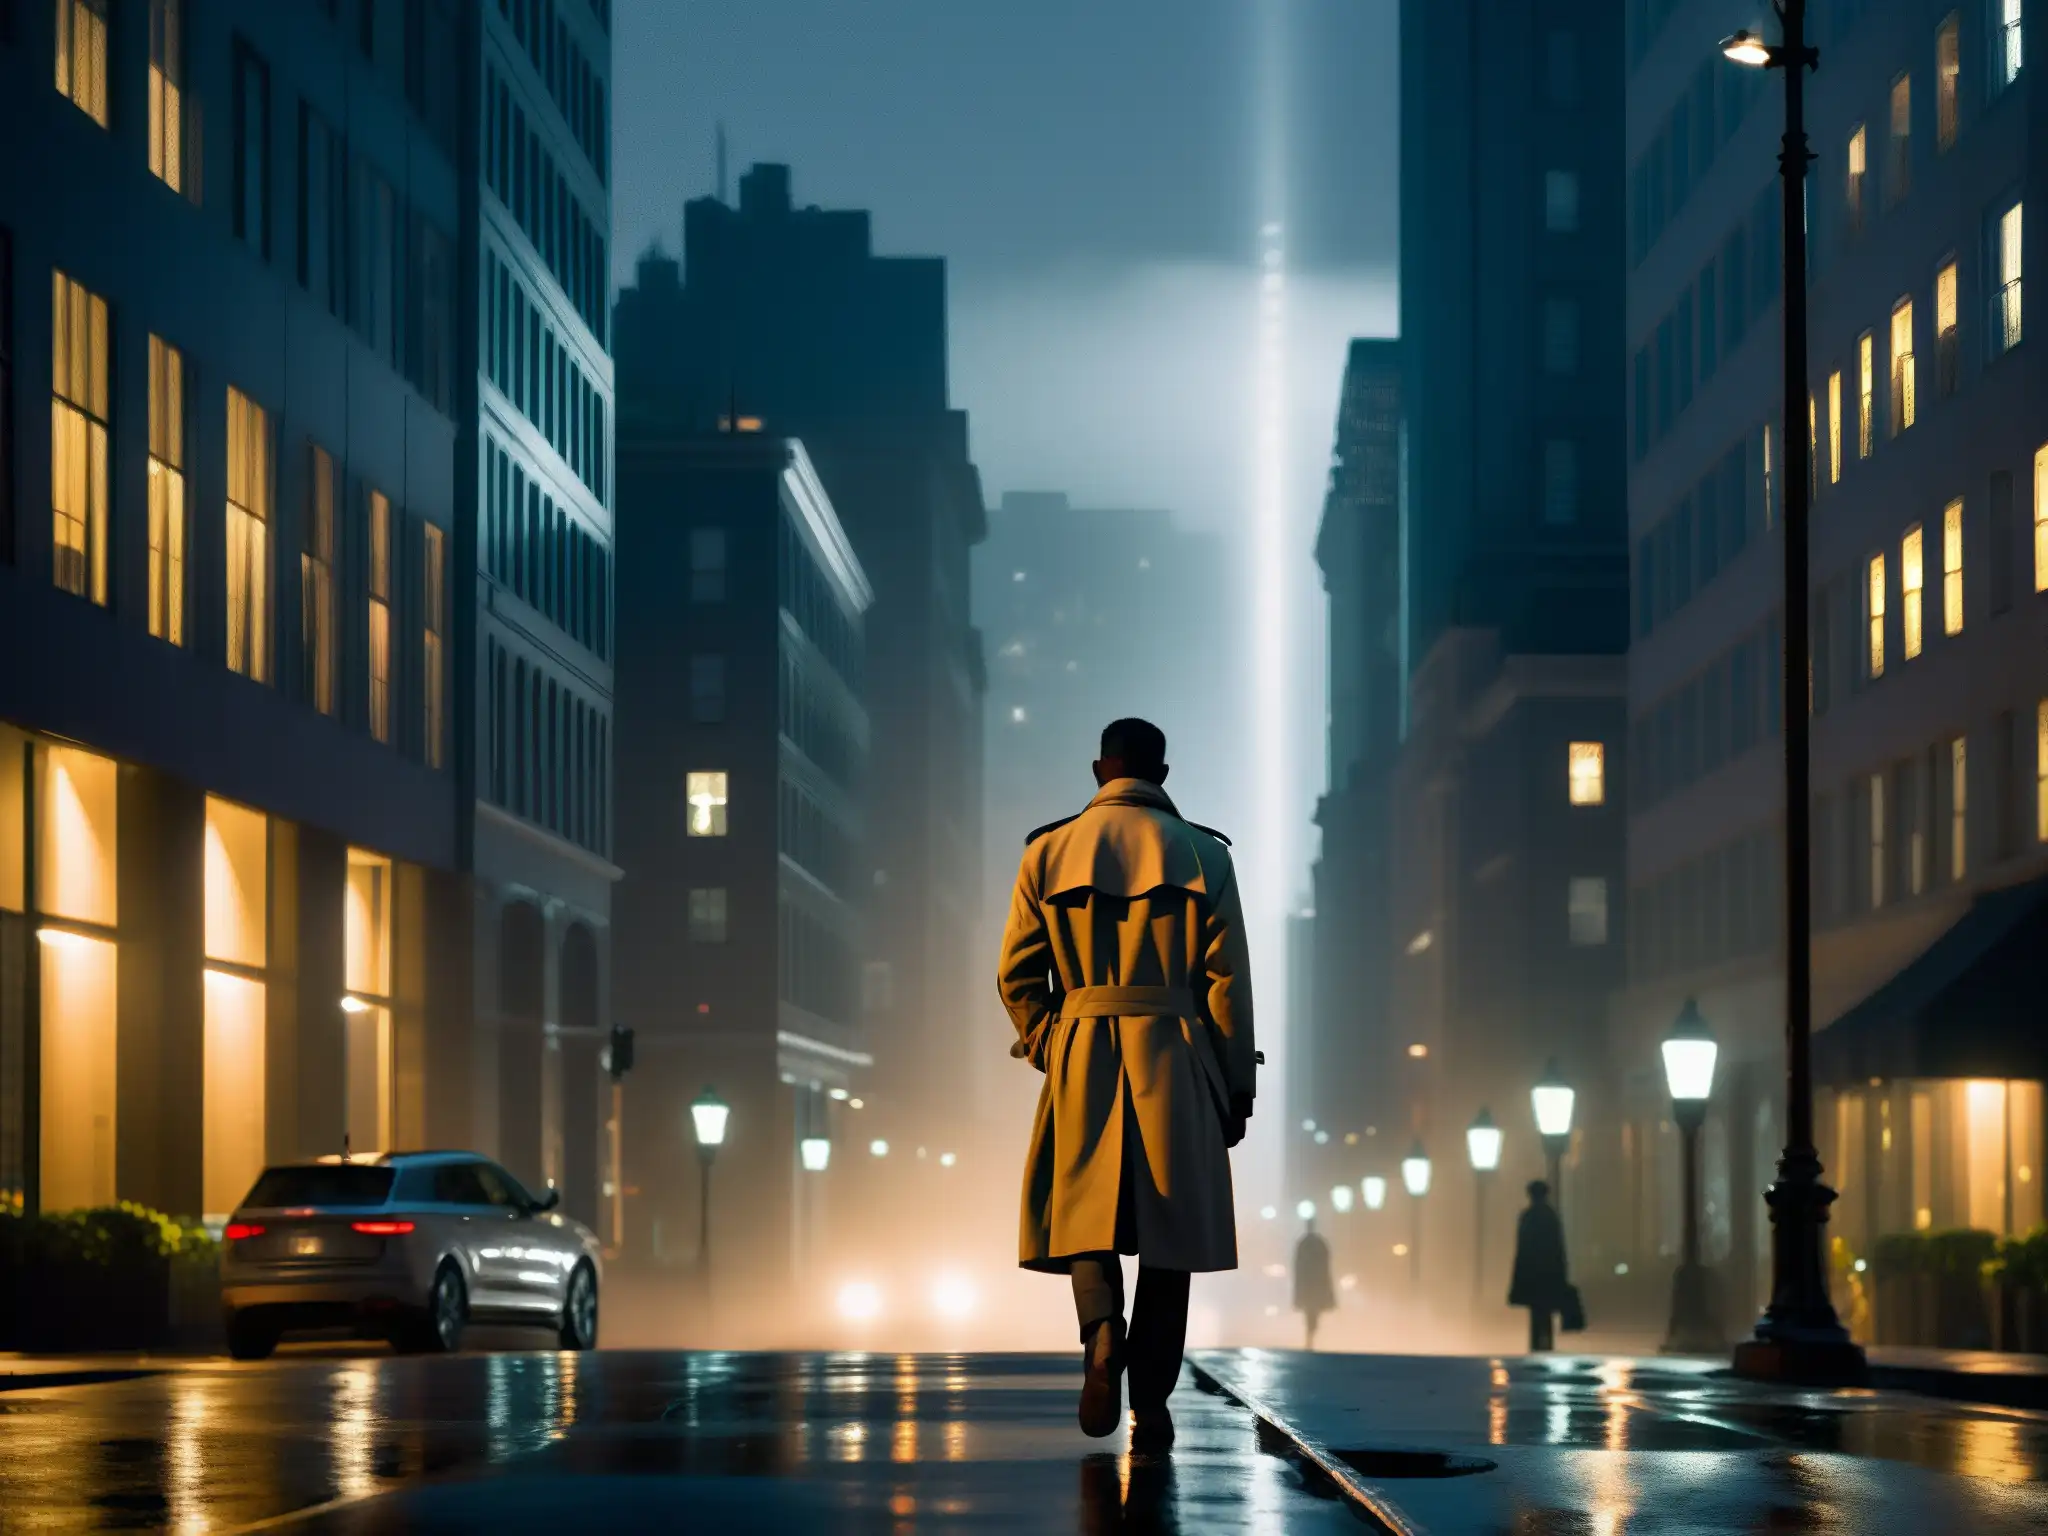 Un misterioso paseo nocturno por la ciudad, con luces y sombras que evocan el Psicoanálisis de leyendas urbanas miedo